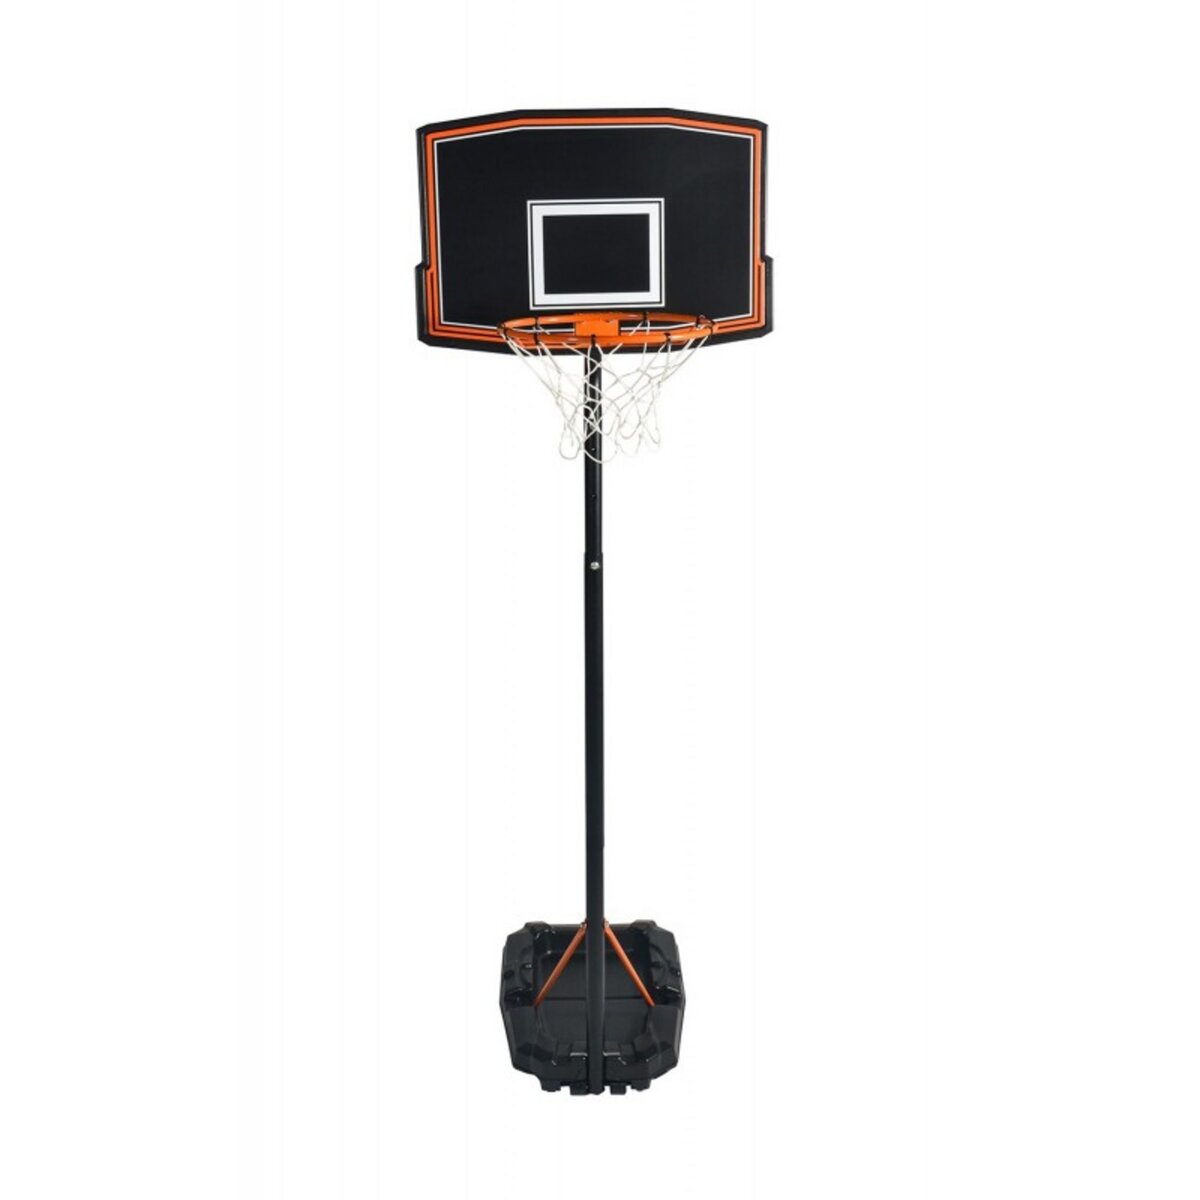 SWAGER Panier de Basketball sur Pied, Mobile et Hauteur Réglable de 1m65 à 2m20